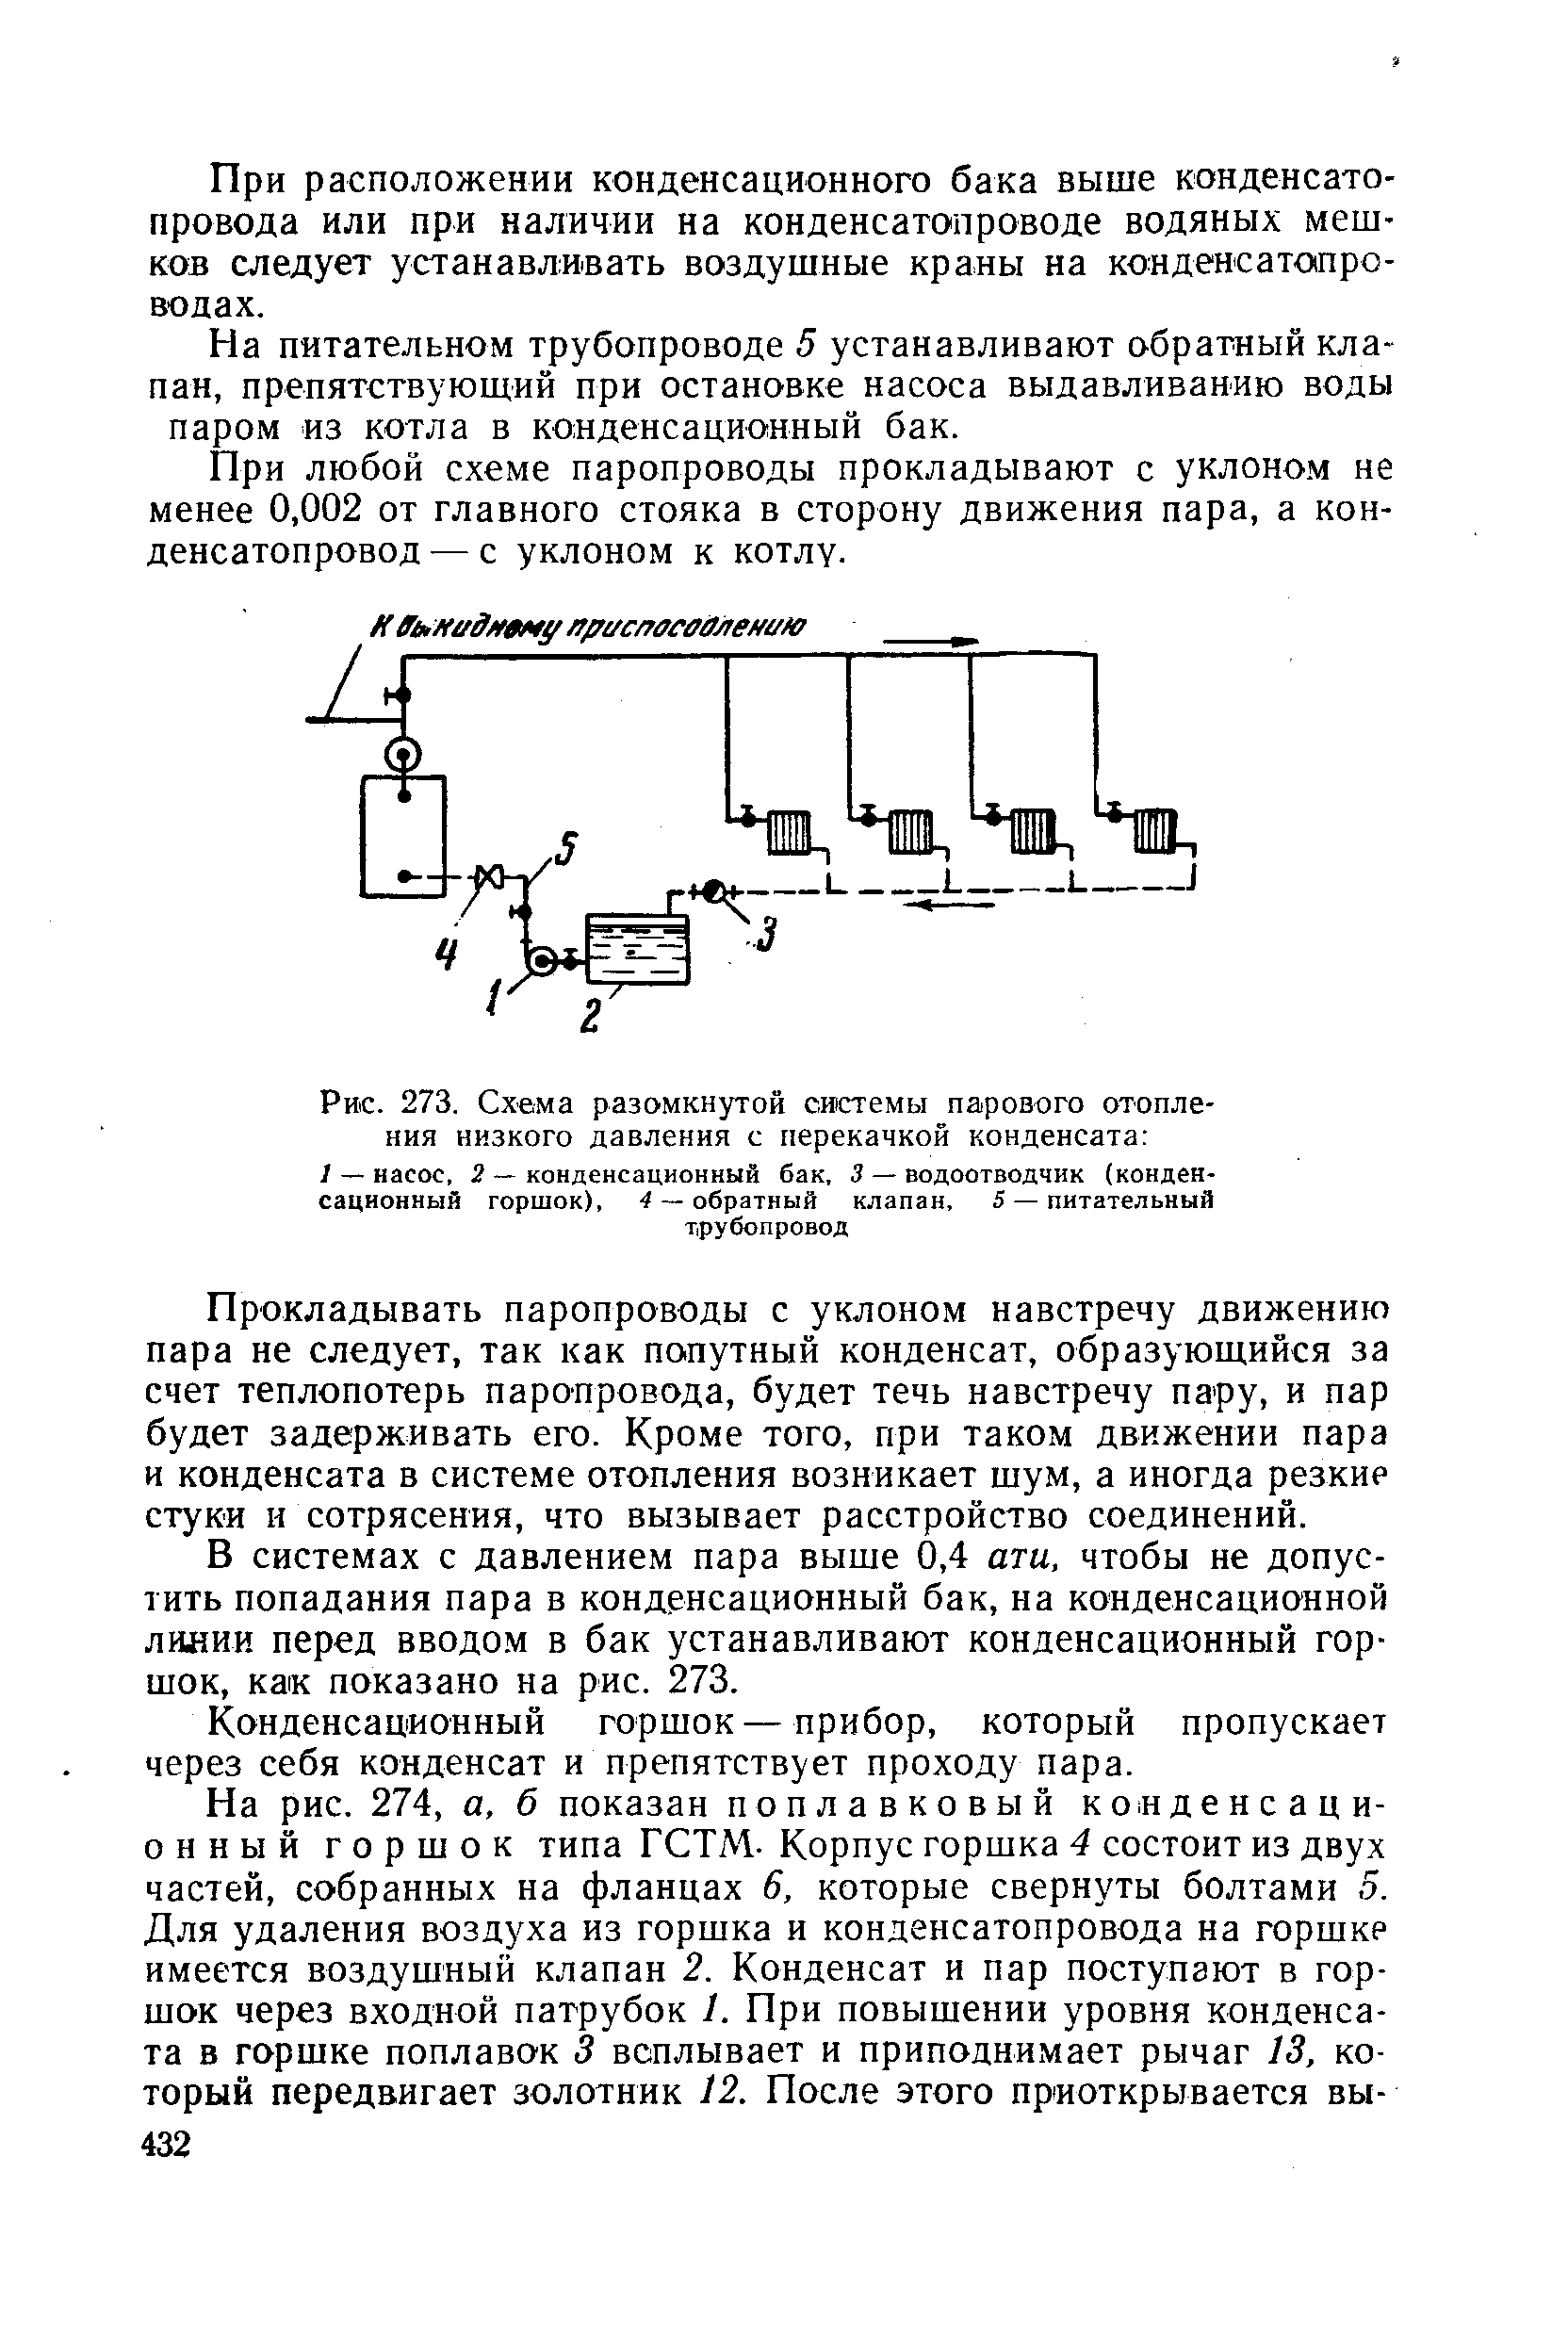 Схема систем парового отопления низкого давления